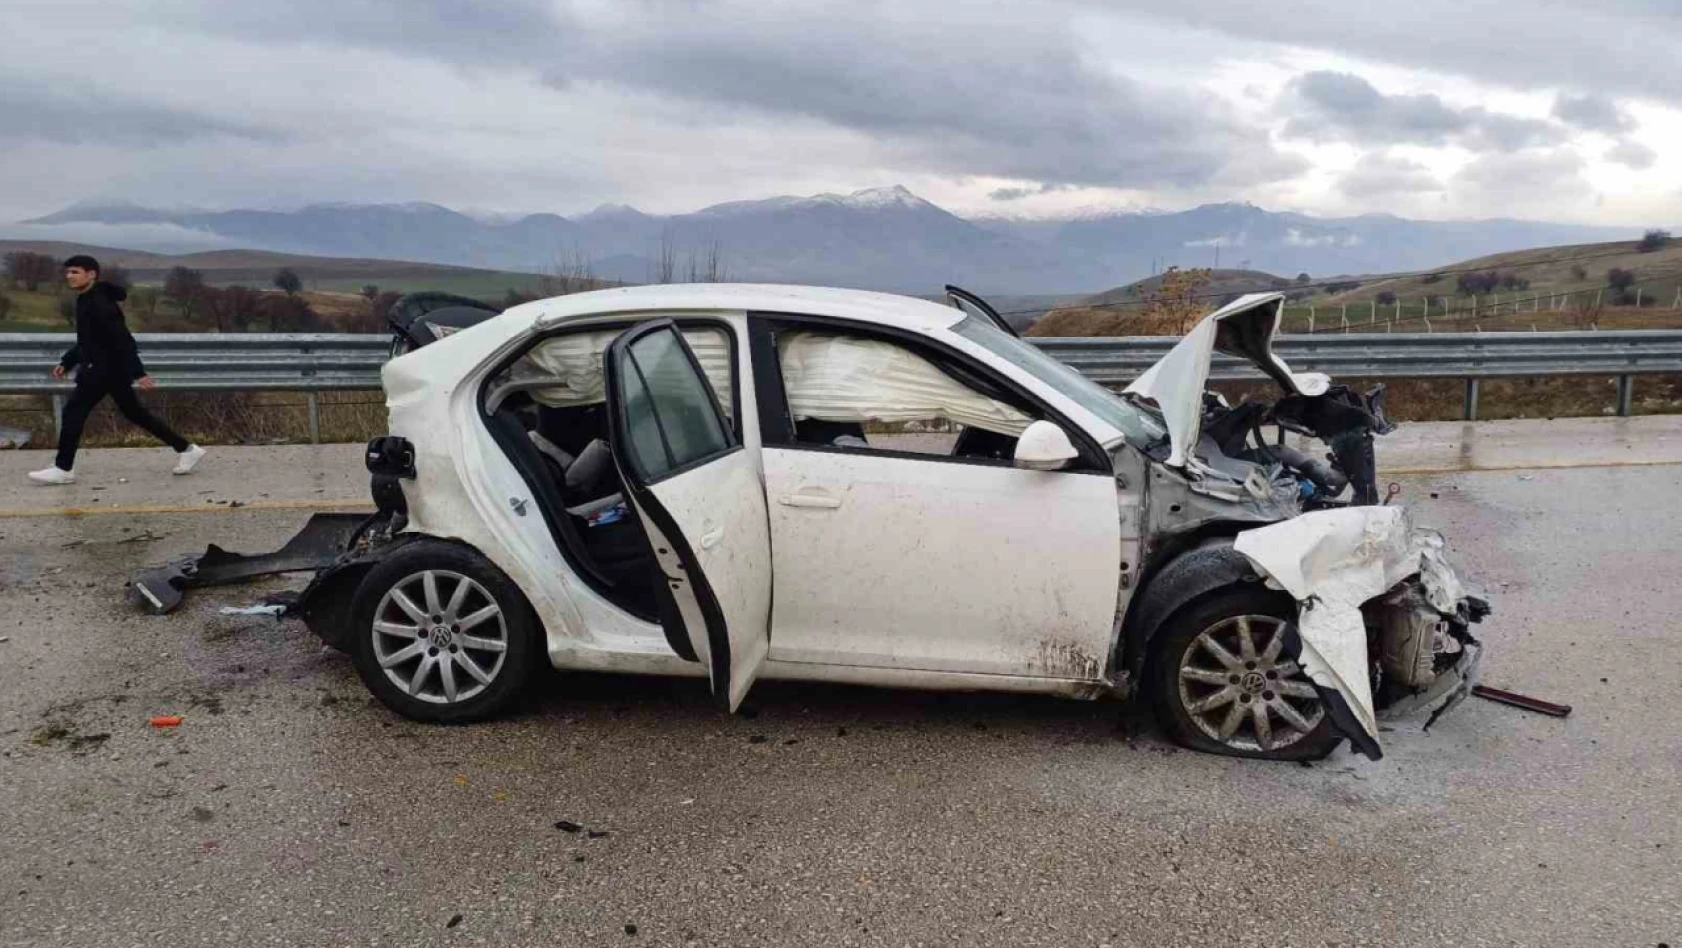 Elazığ'da iki araç çarpıştı: 4 yaralı